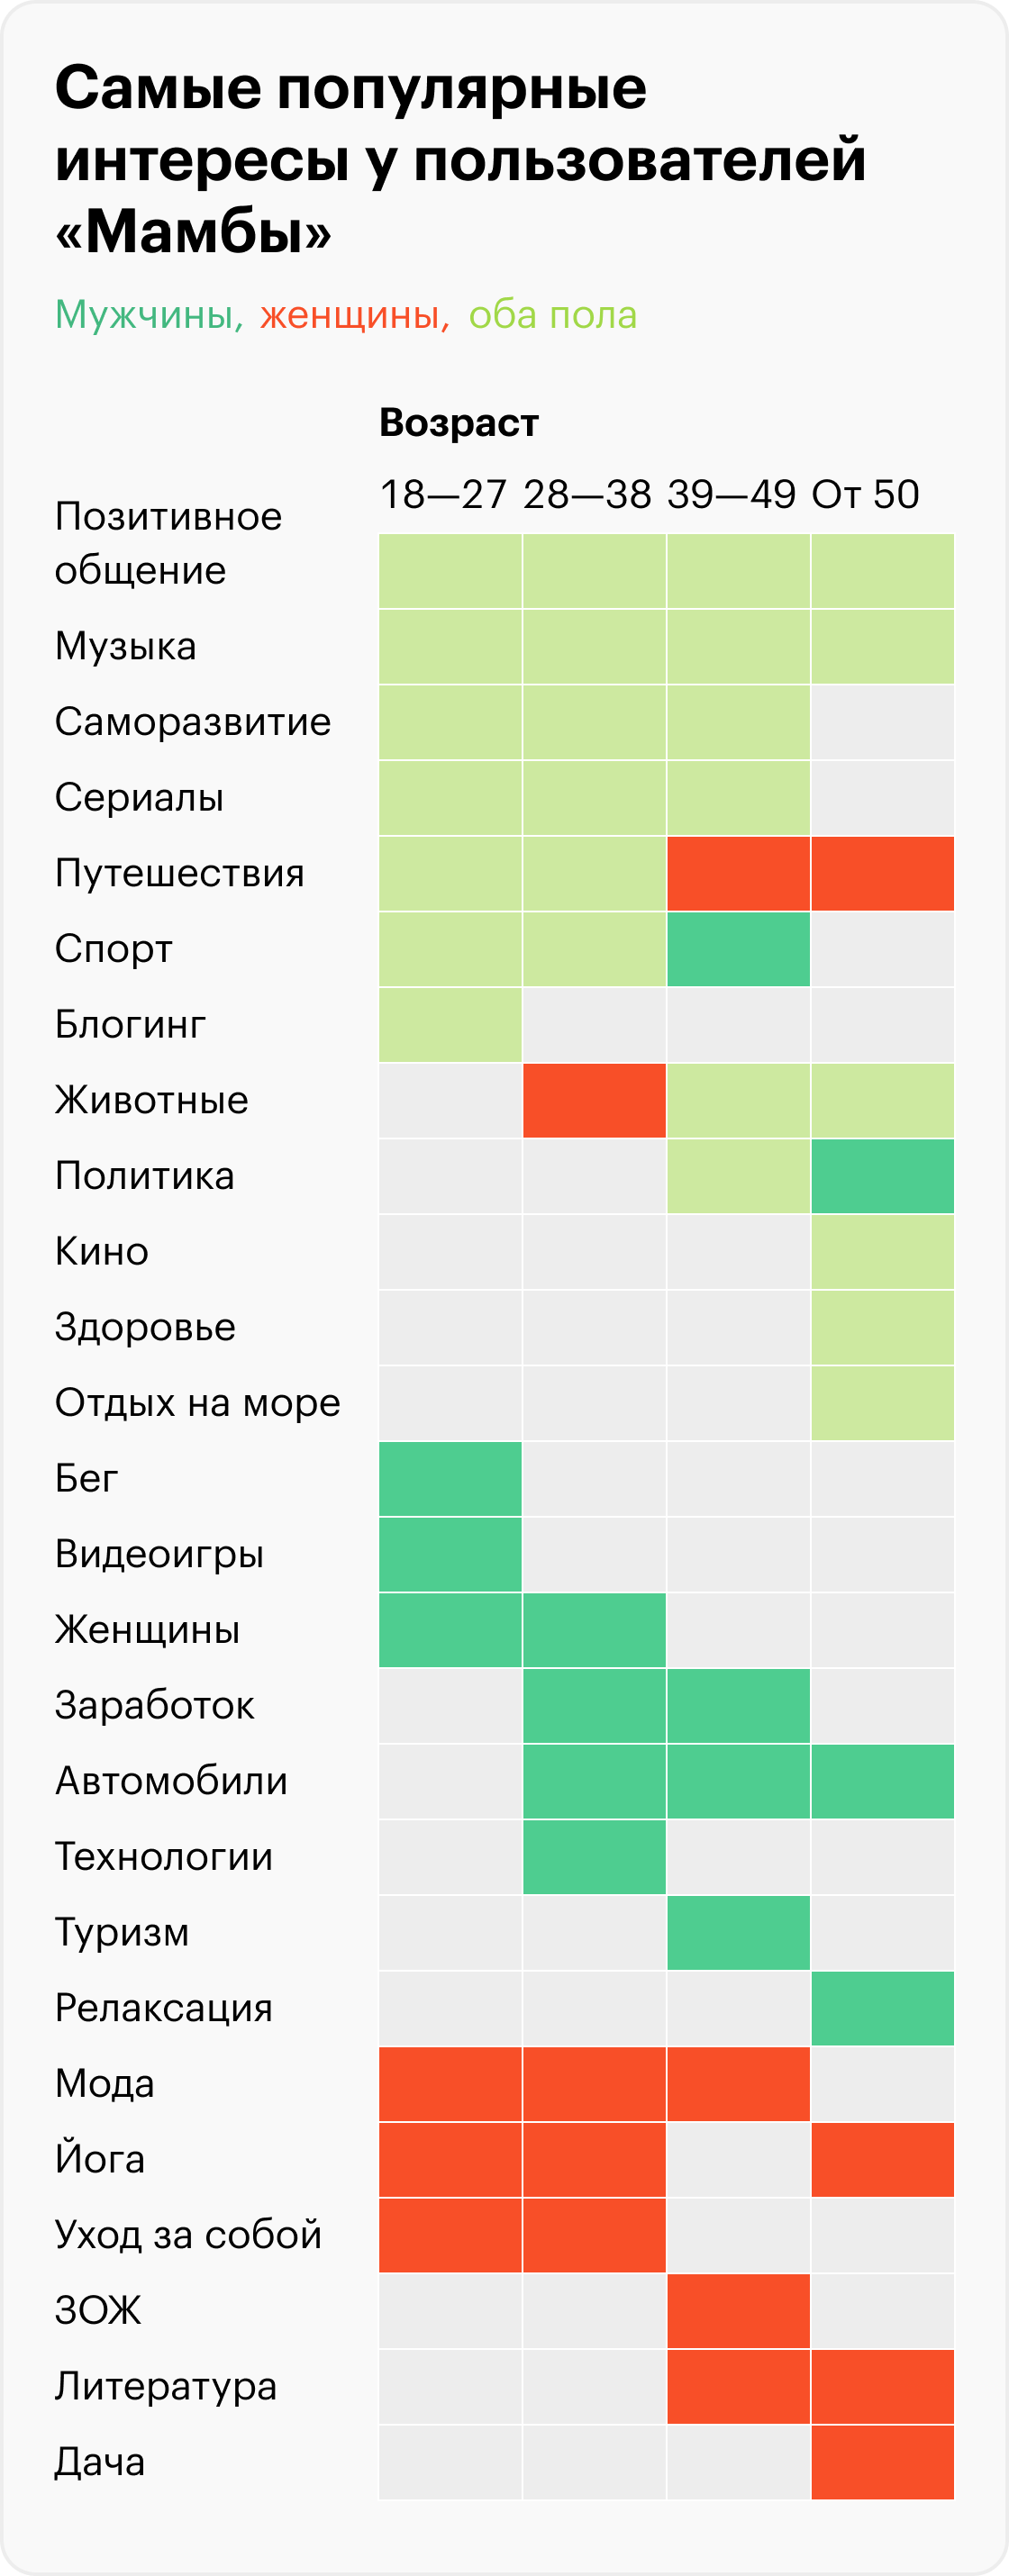 Данные по России. Источник: «Мамба»